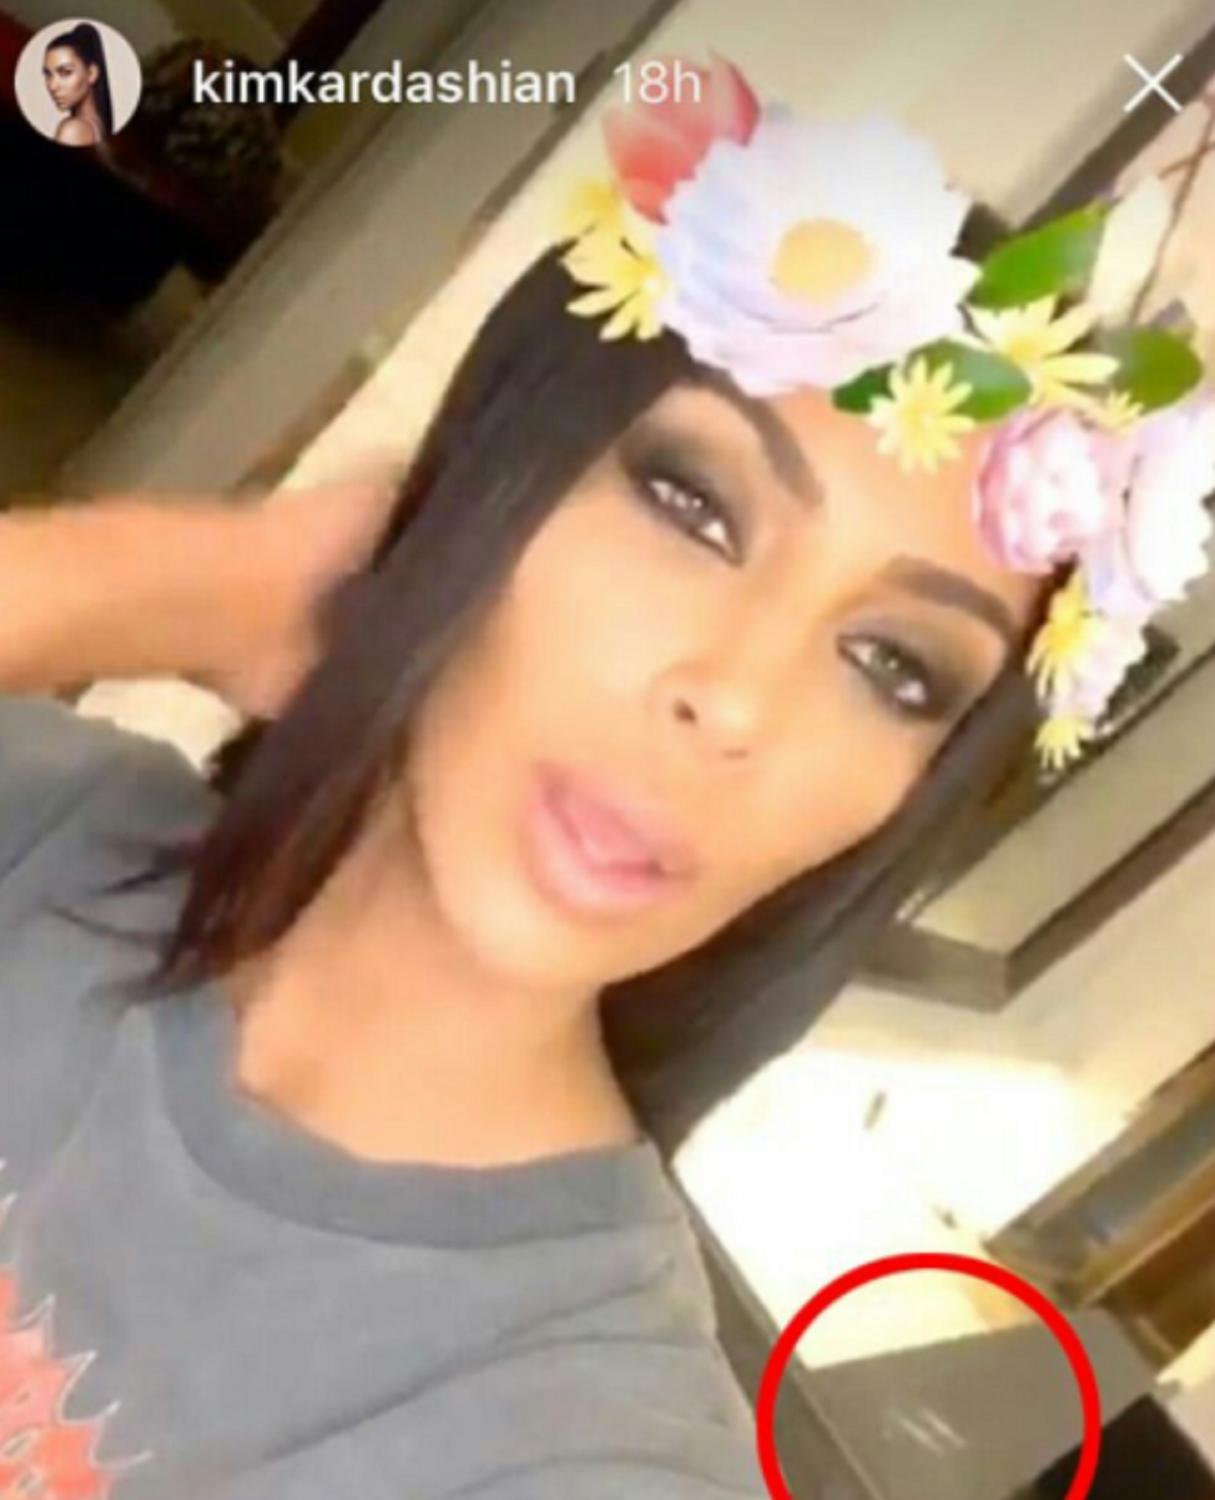 Kim Kardashian descubre en un vídeo grabado con teléfono móvil cuál de sus tres maridos es homosexual